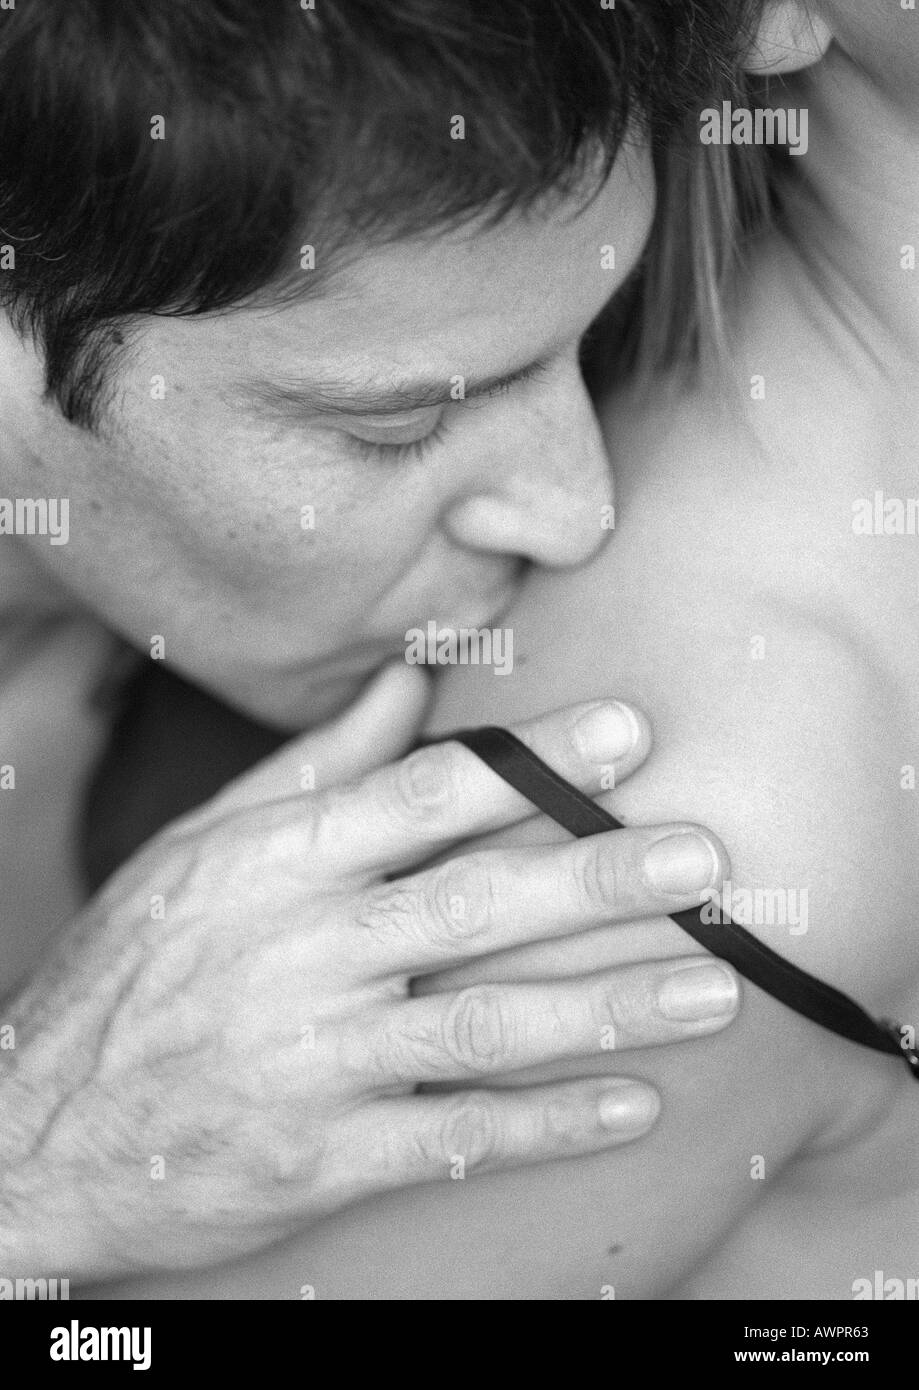 парень целует в живот и грудь фото 89